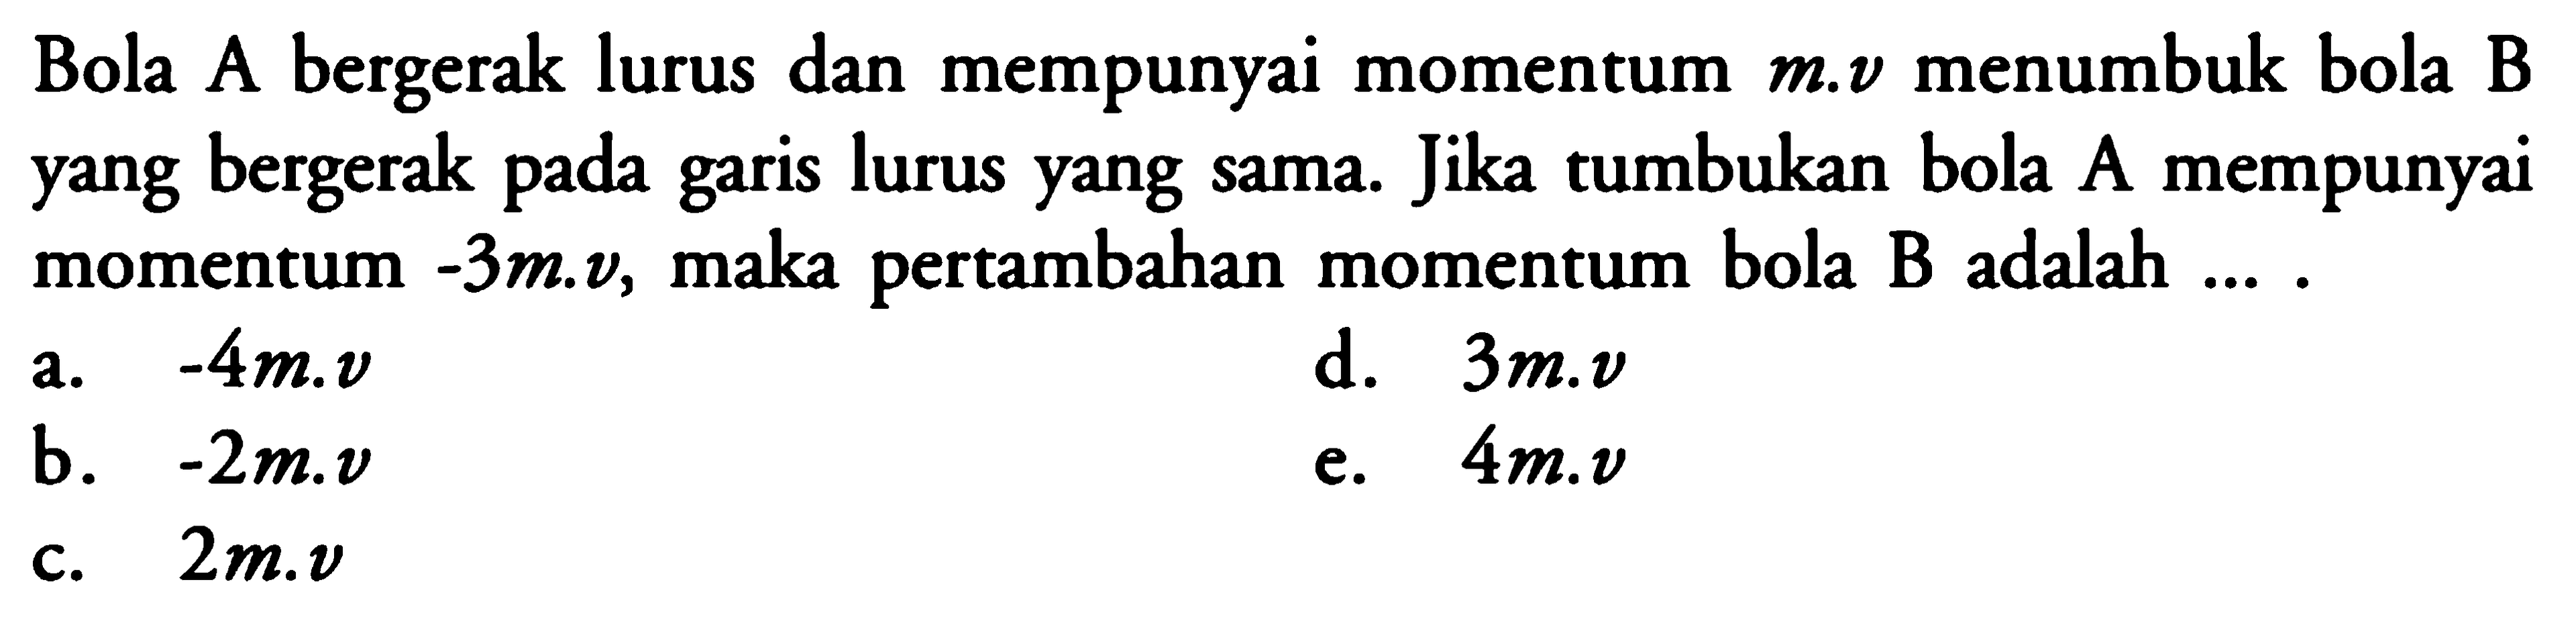 Bola A bergerak lurus dan mempunyai momentum m.v menumbuk bola B yang bergerak pada garis lurus yang sama. Jika tumbukan bola A mempunyai momentum -3m.v, maka pertambahan momentum bola B adalah .... 